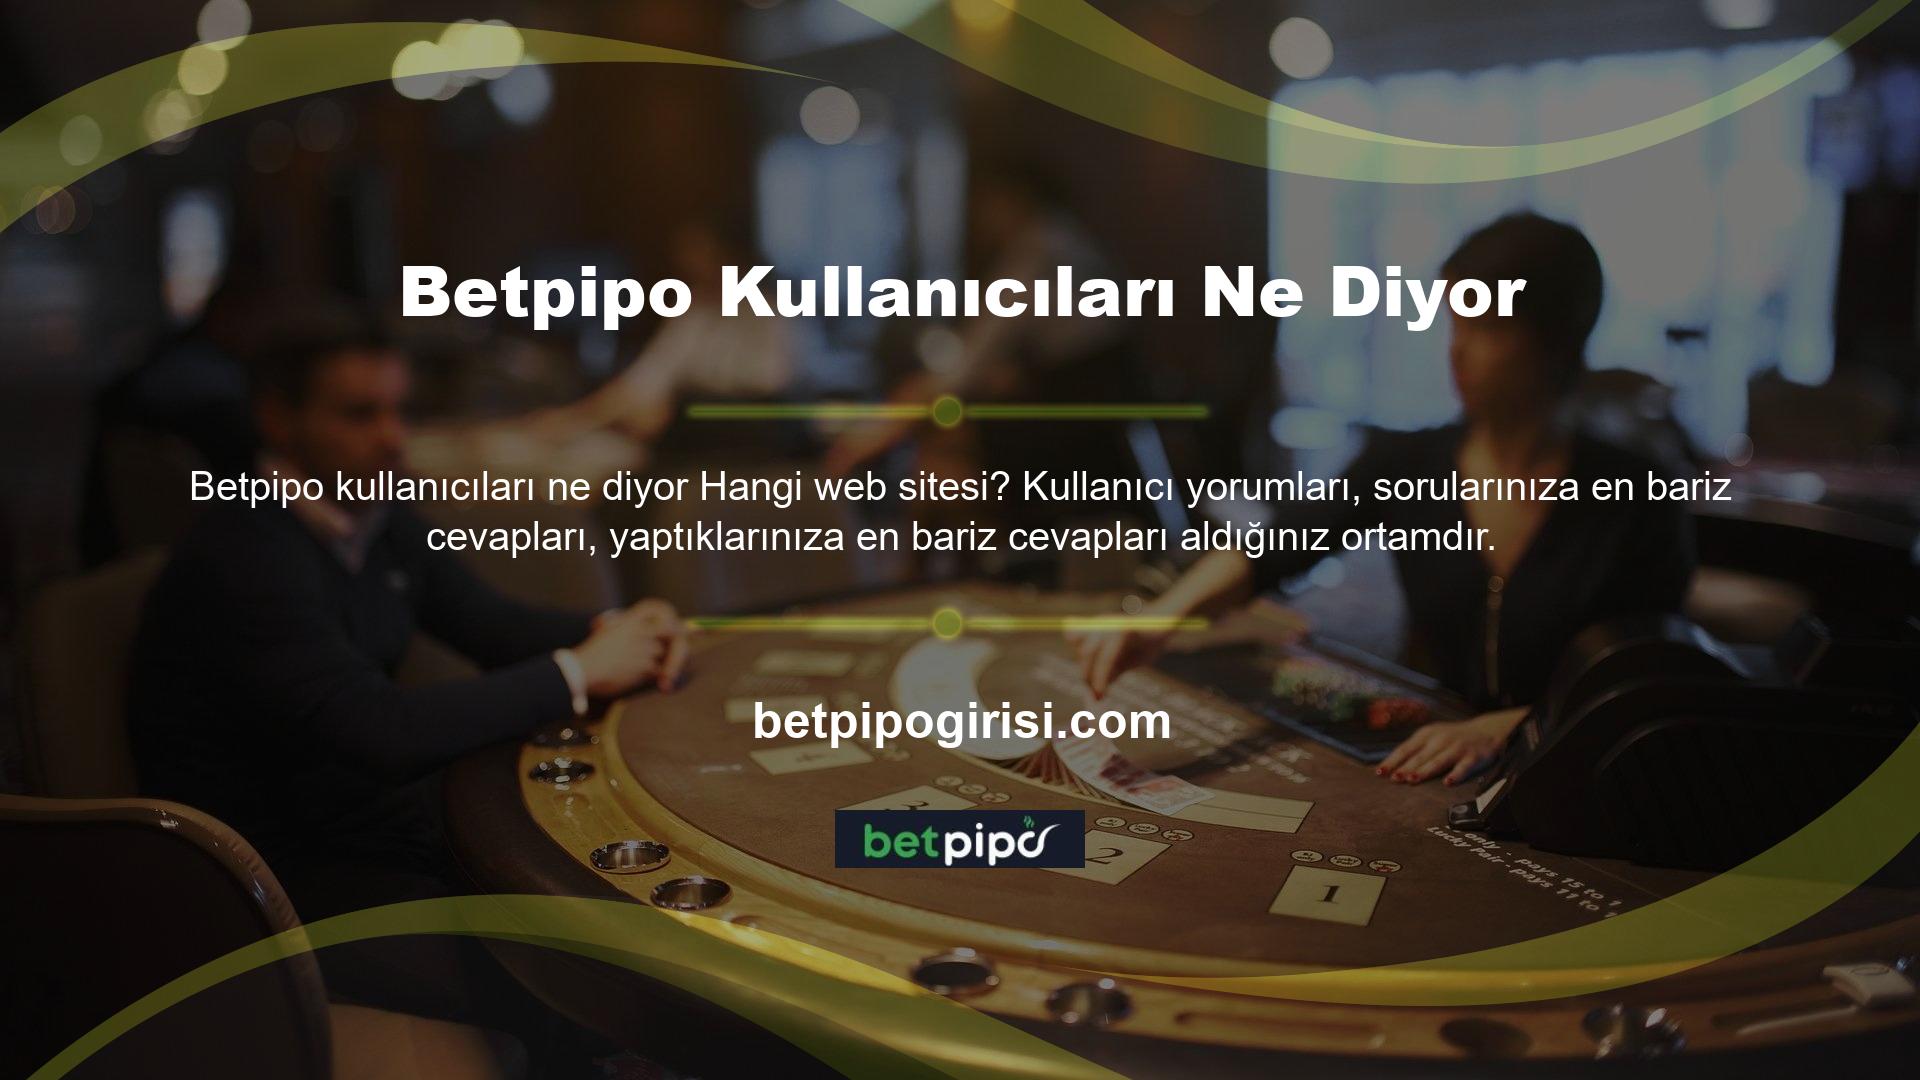 Betpipo kullanıcıları ne diyor? Kullanıcı incelemeleri, sitenin finansal işlemler, promosyonlar, bahisler, oyunlar, müşteri hizmetleri sorunları ve yardım talepleriyle ilgili herhangi bir sorunu olmadığını göstermektedir